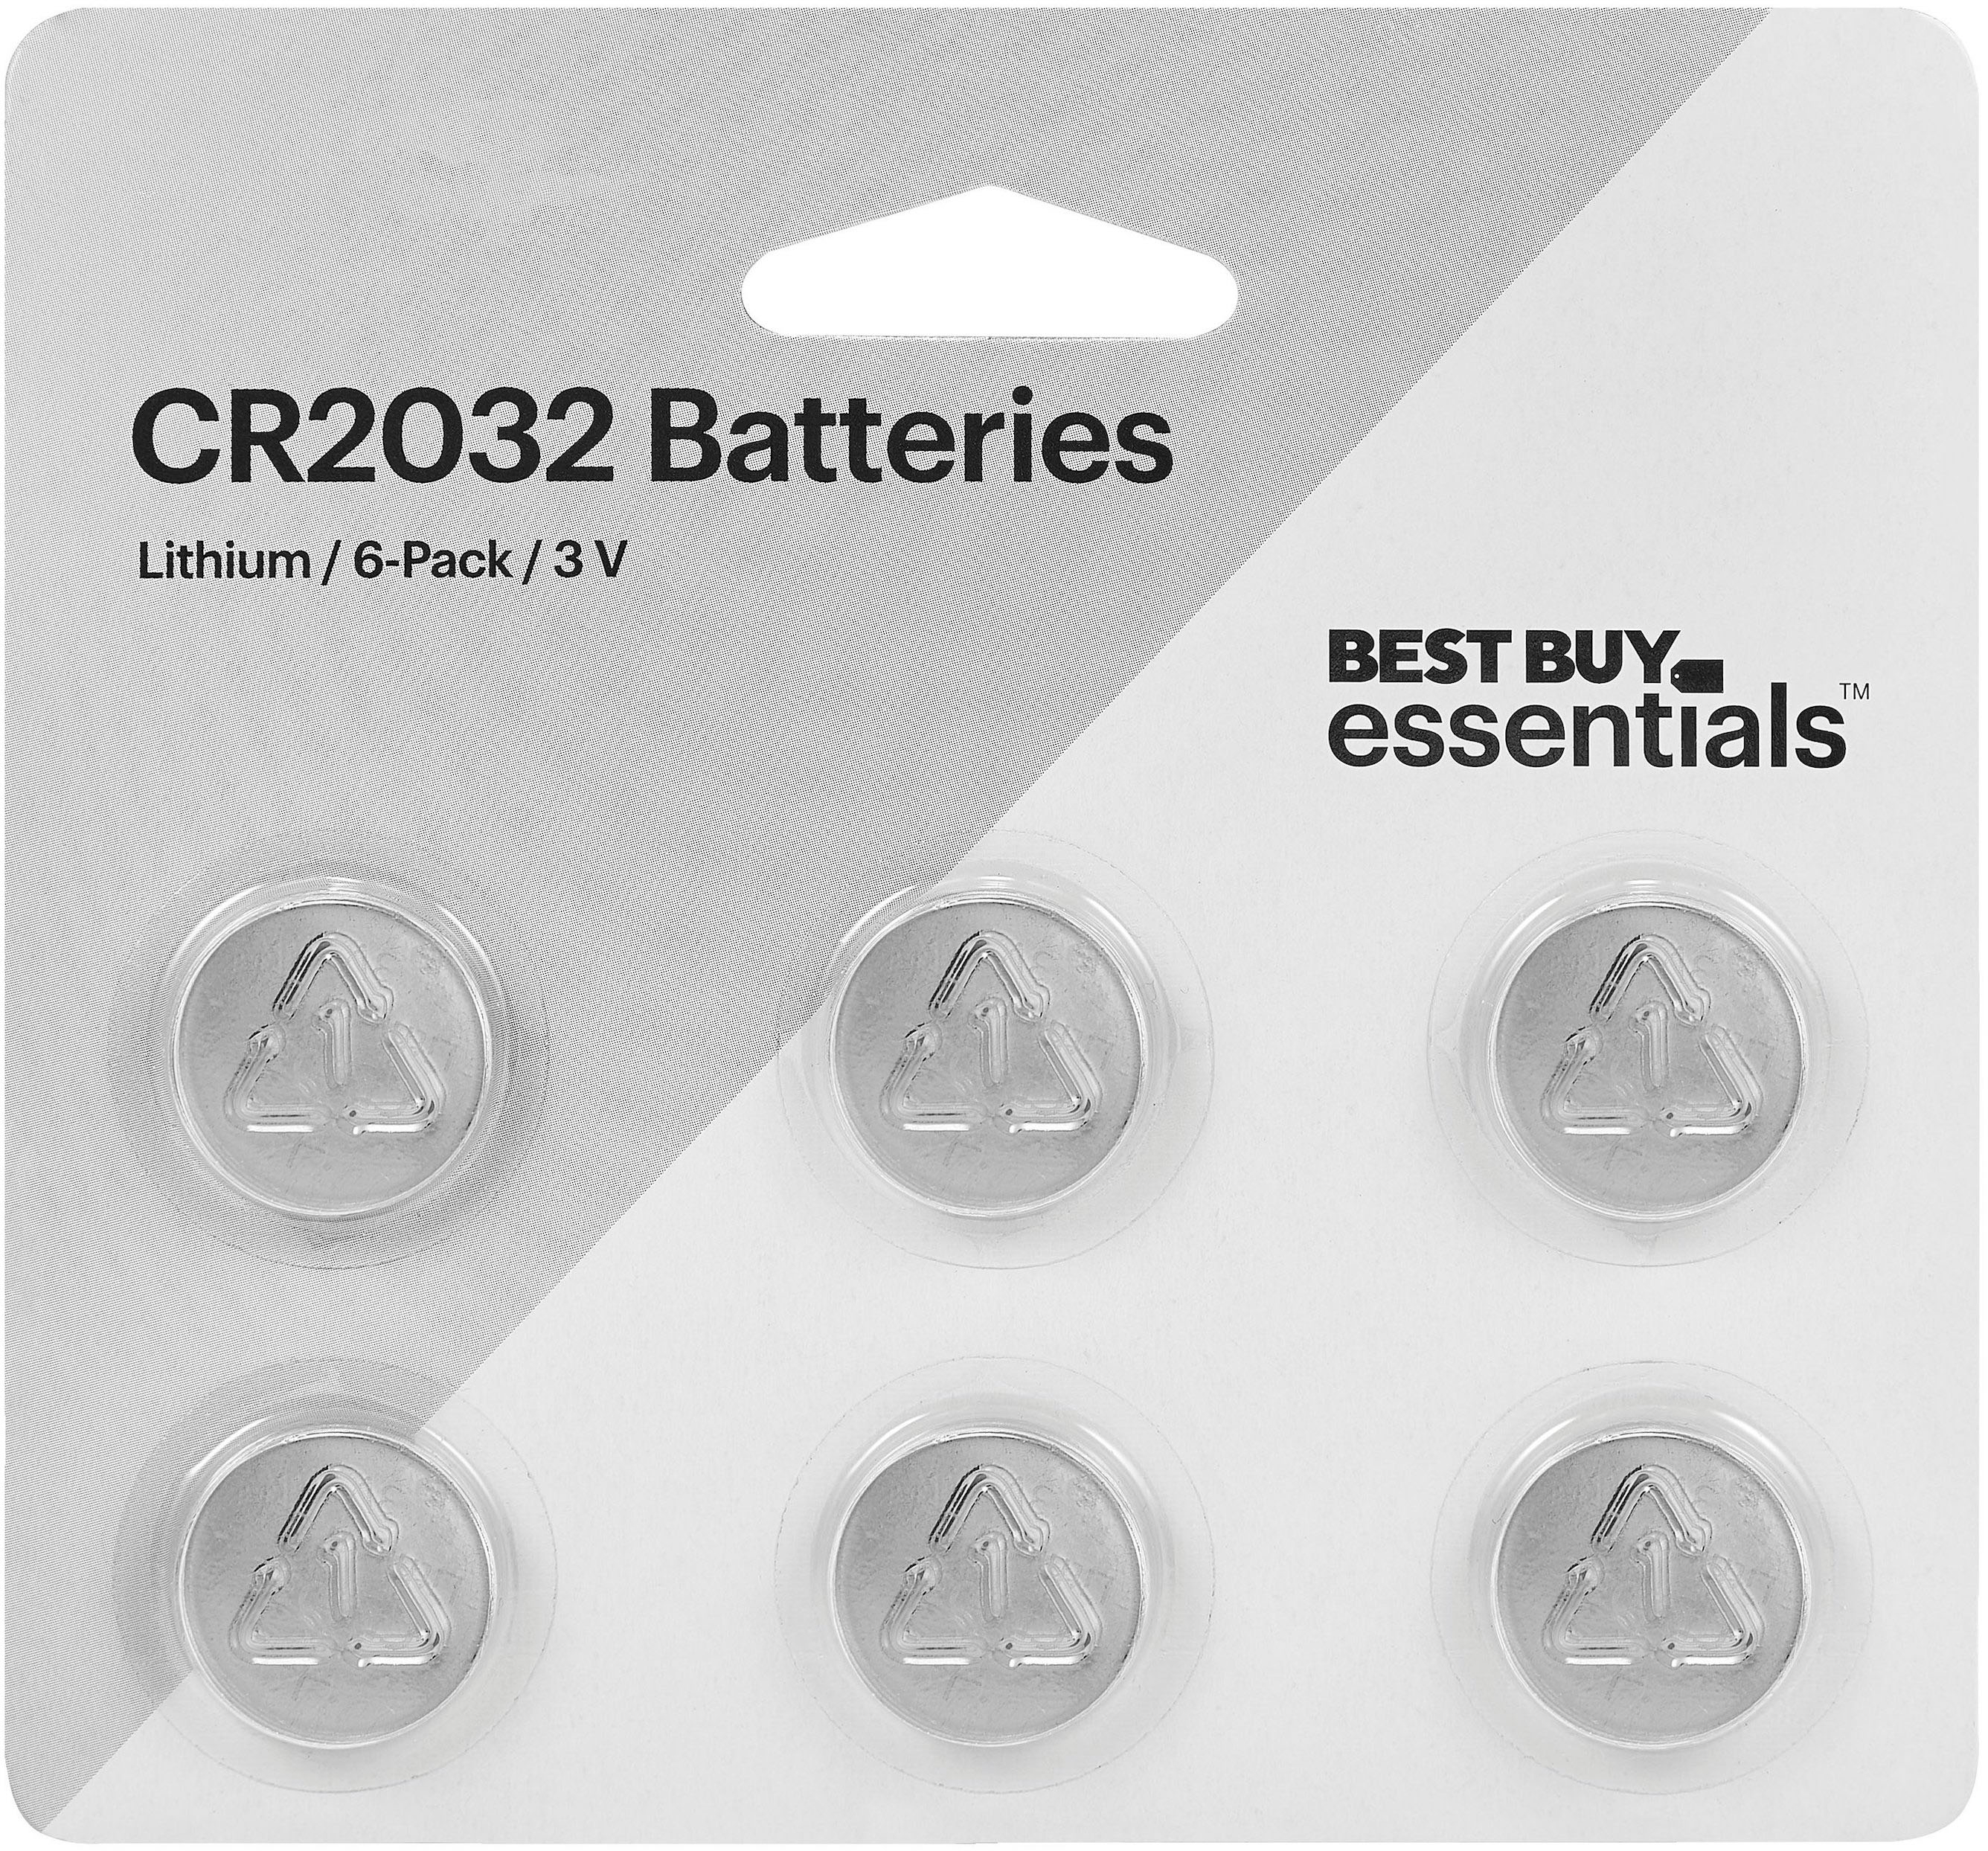 Gentage sig Transportere bule Best Buy essentials™ CR2032 Batteries (6-Pack) BE-B20326PK - Best Buy